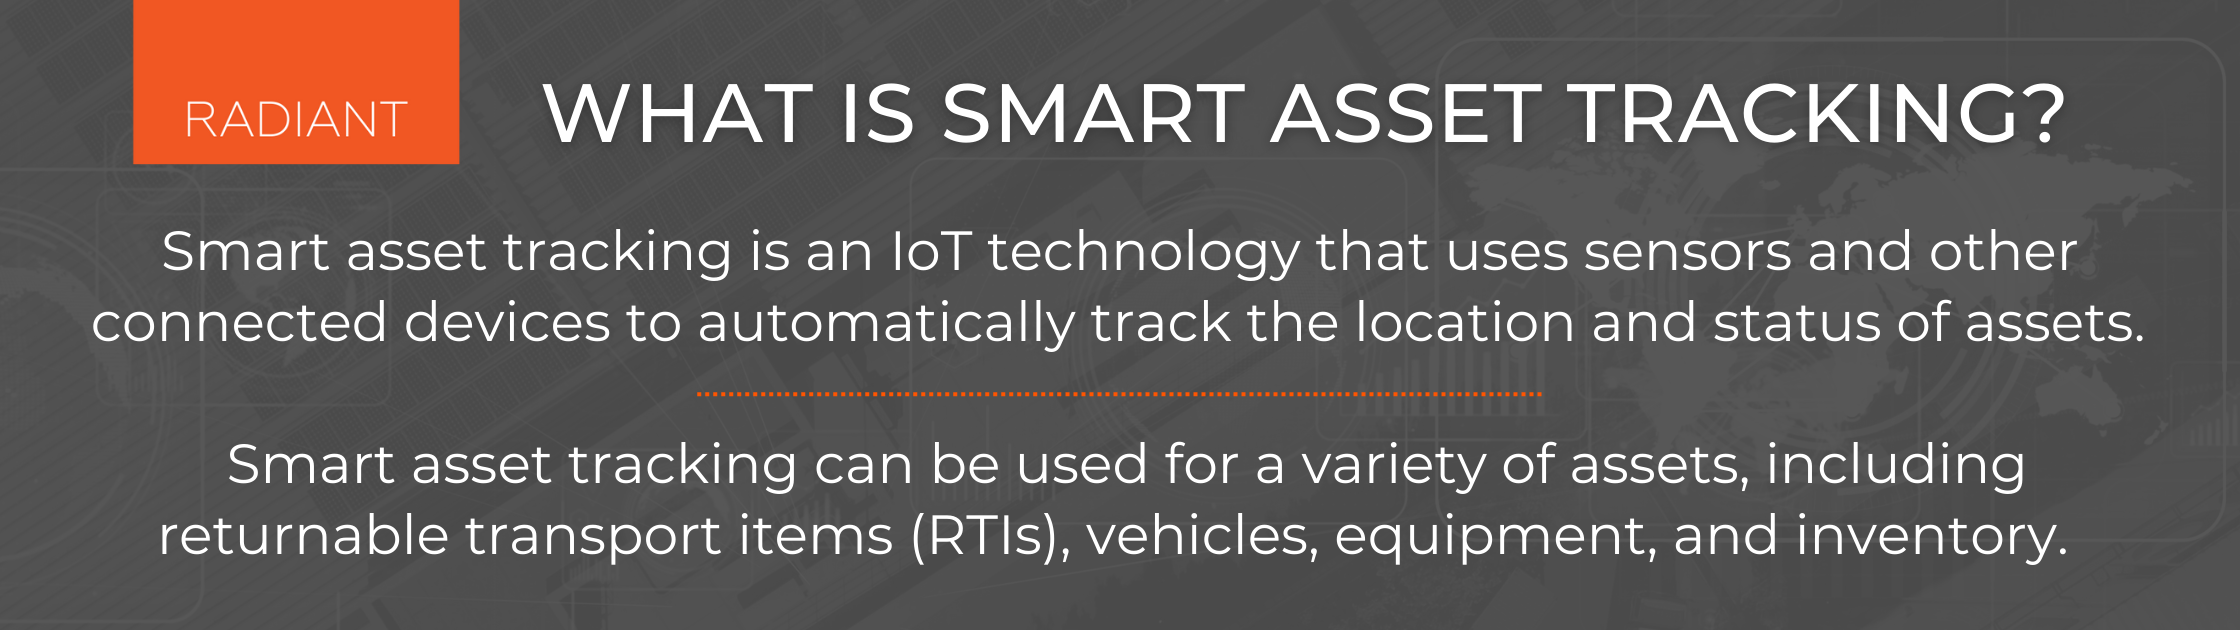 Smart Asset Tracking - Smart Asset Tracking With IoT Technologies - IoT Technologies - Smart Asset Management - IoT Enabled Asset Tracking - Asset Tracking With IoT - Asset Tracking IoT Solutions - IoT Asset Tracking - IoT Based Asset Tracking